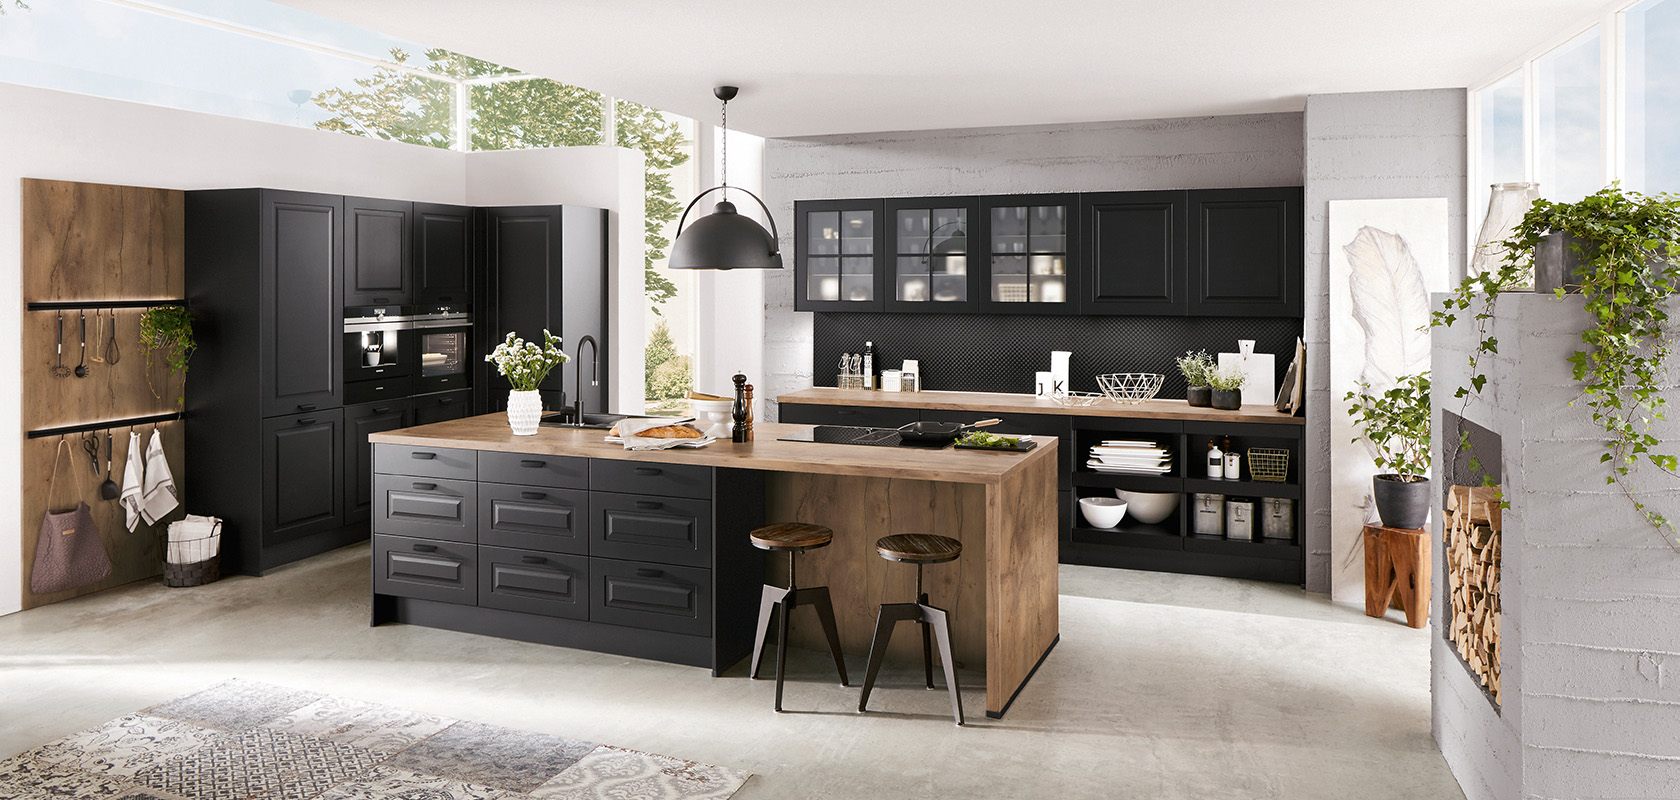 Moderne Kücheninnenräume mit eleganten schwarzen Schränken, Holzakzenten und einer zentralen Insel, durchflutet von natürlichem Licht und Grün für einen stilvollen, einladenden Raum.